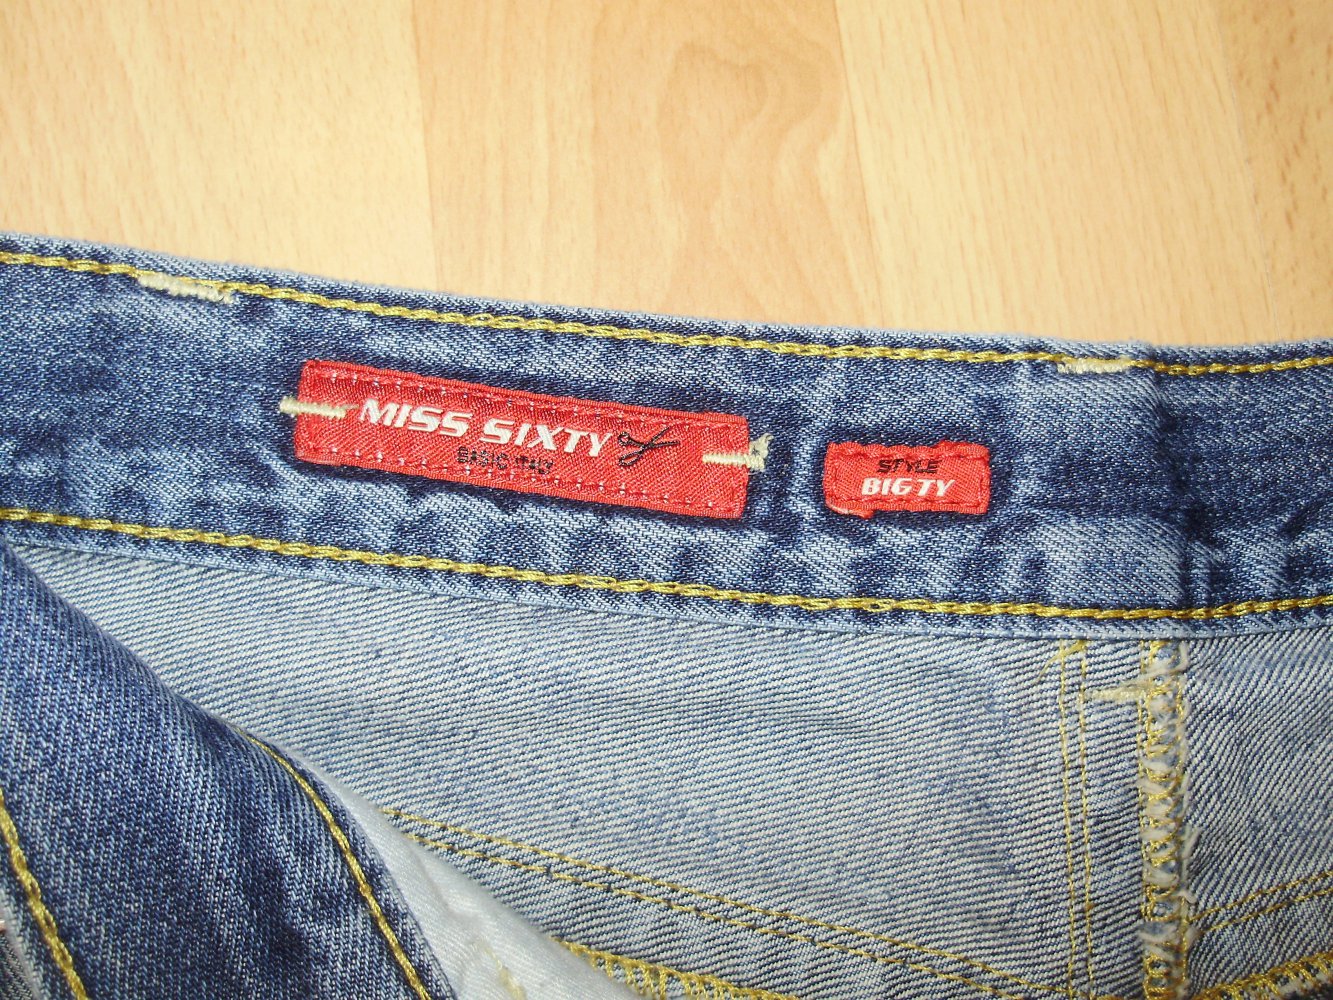 Sixty reißverschluss miss hinten jeans ᐅ Miss